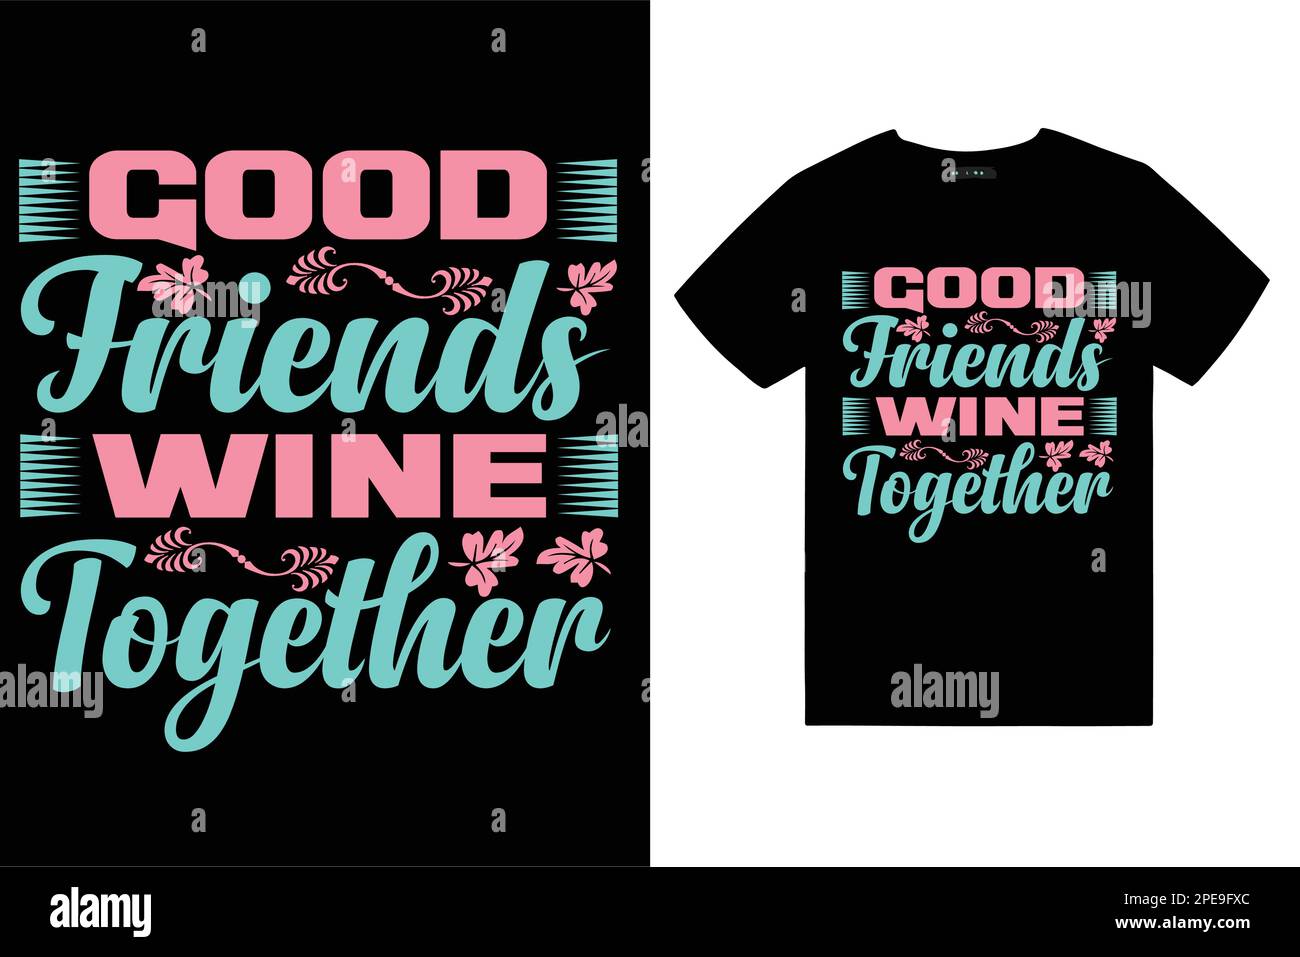 amor tipografía t shirt diseño amigos pareja corazón miembro de la familia t-shirt diseño arco iris retro vintage t shirt Ilustración del Vector